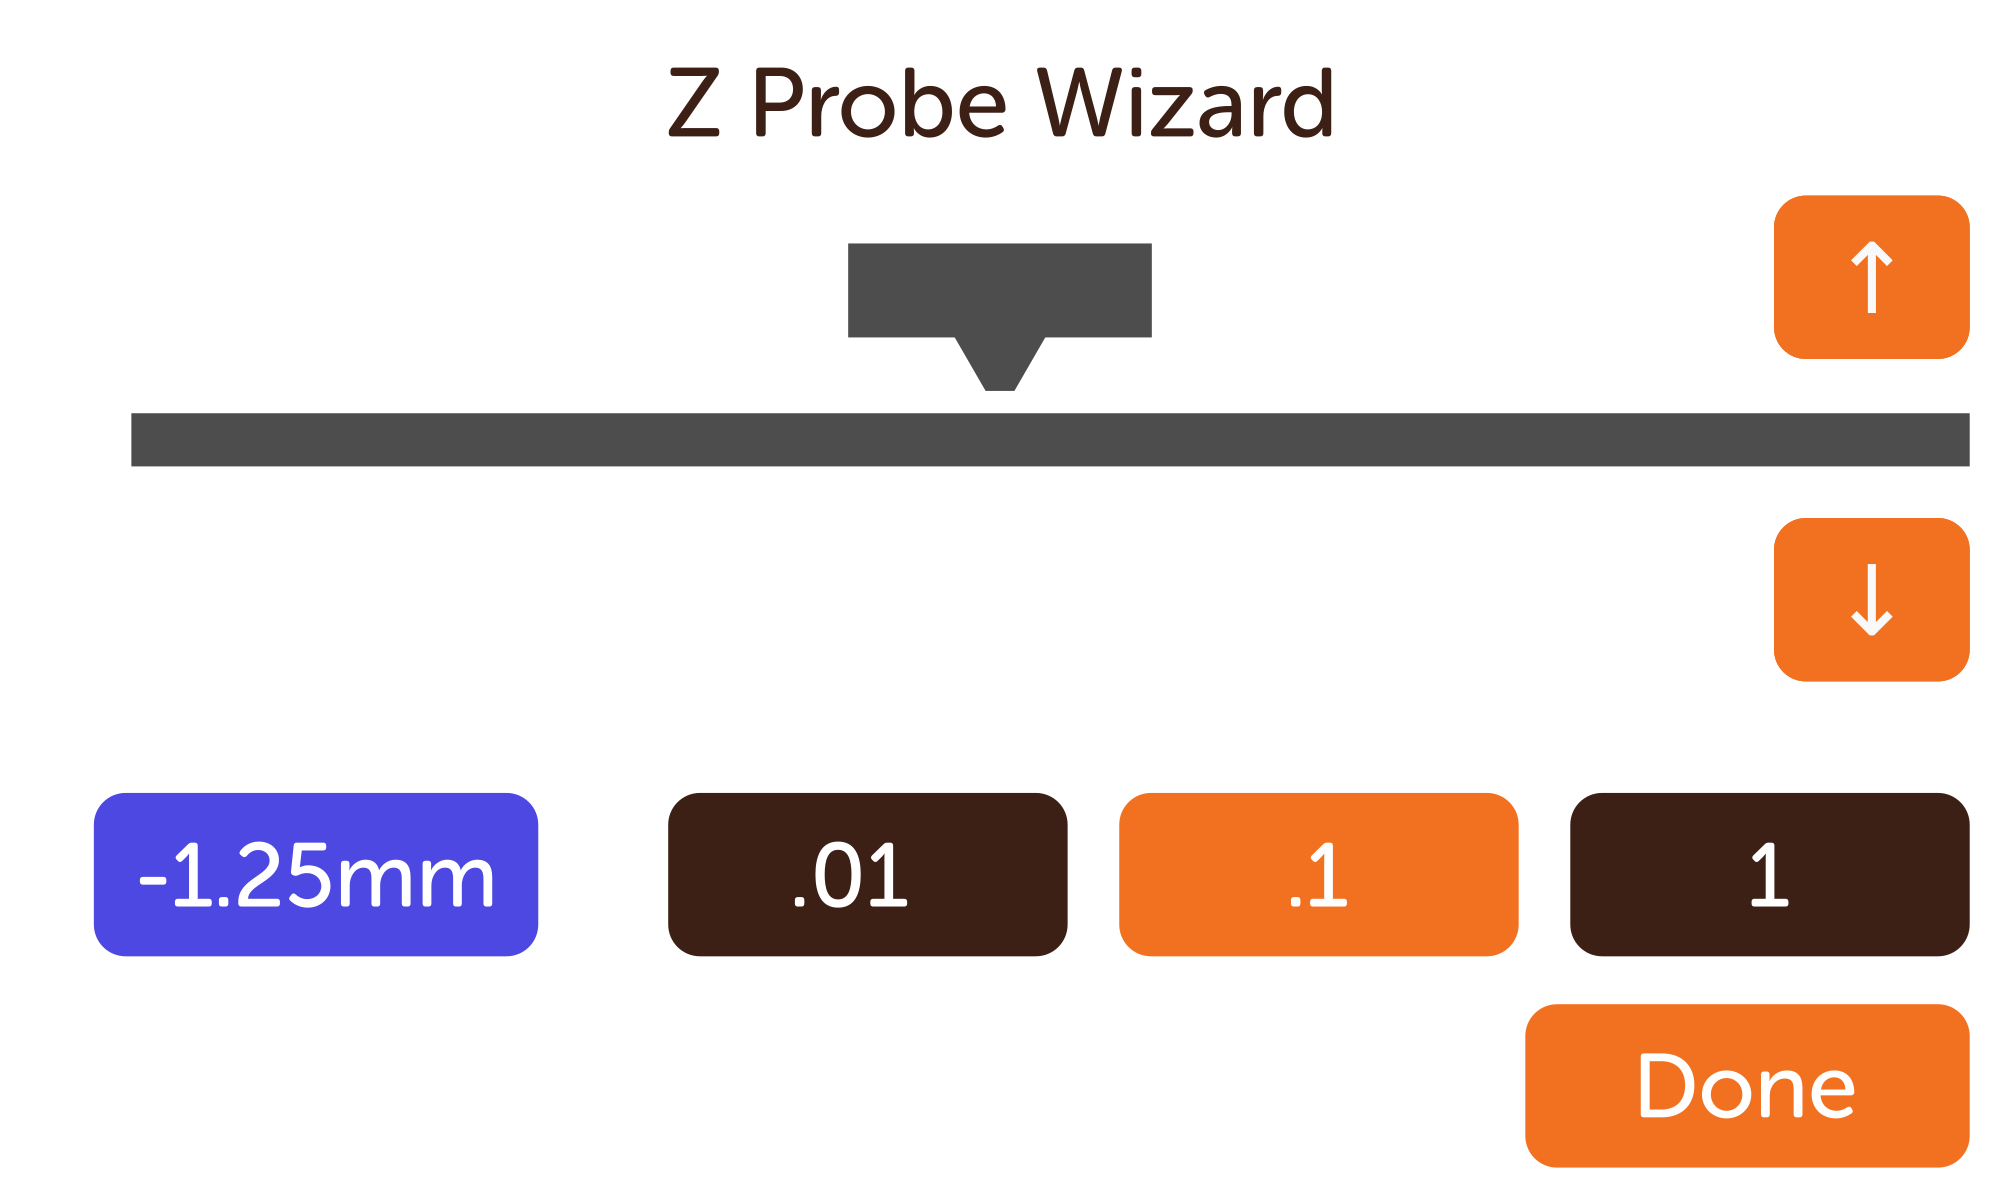 A replica of the "Z Probe Wizard" menu screen from the Cocoa Press printer.